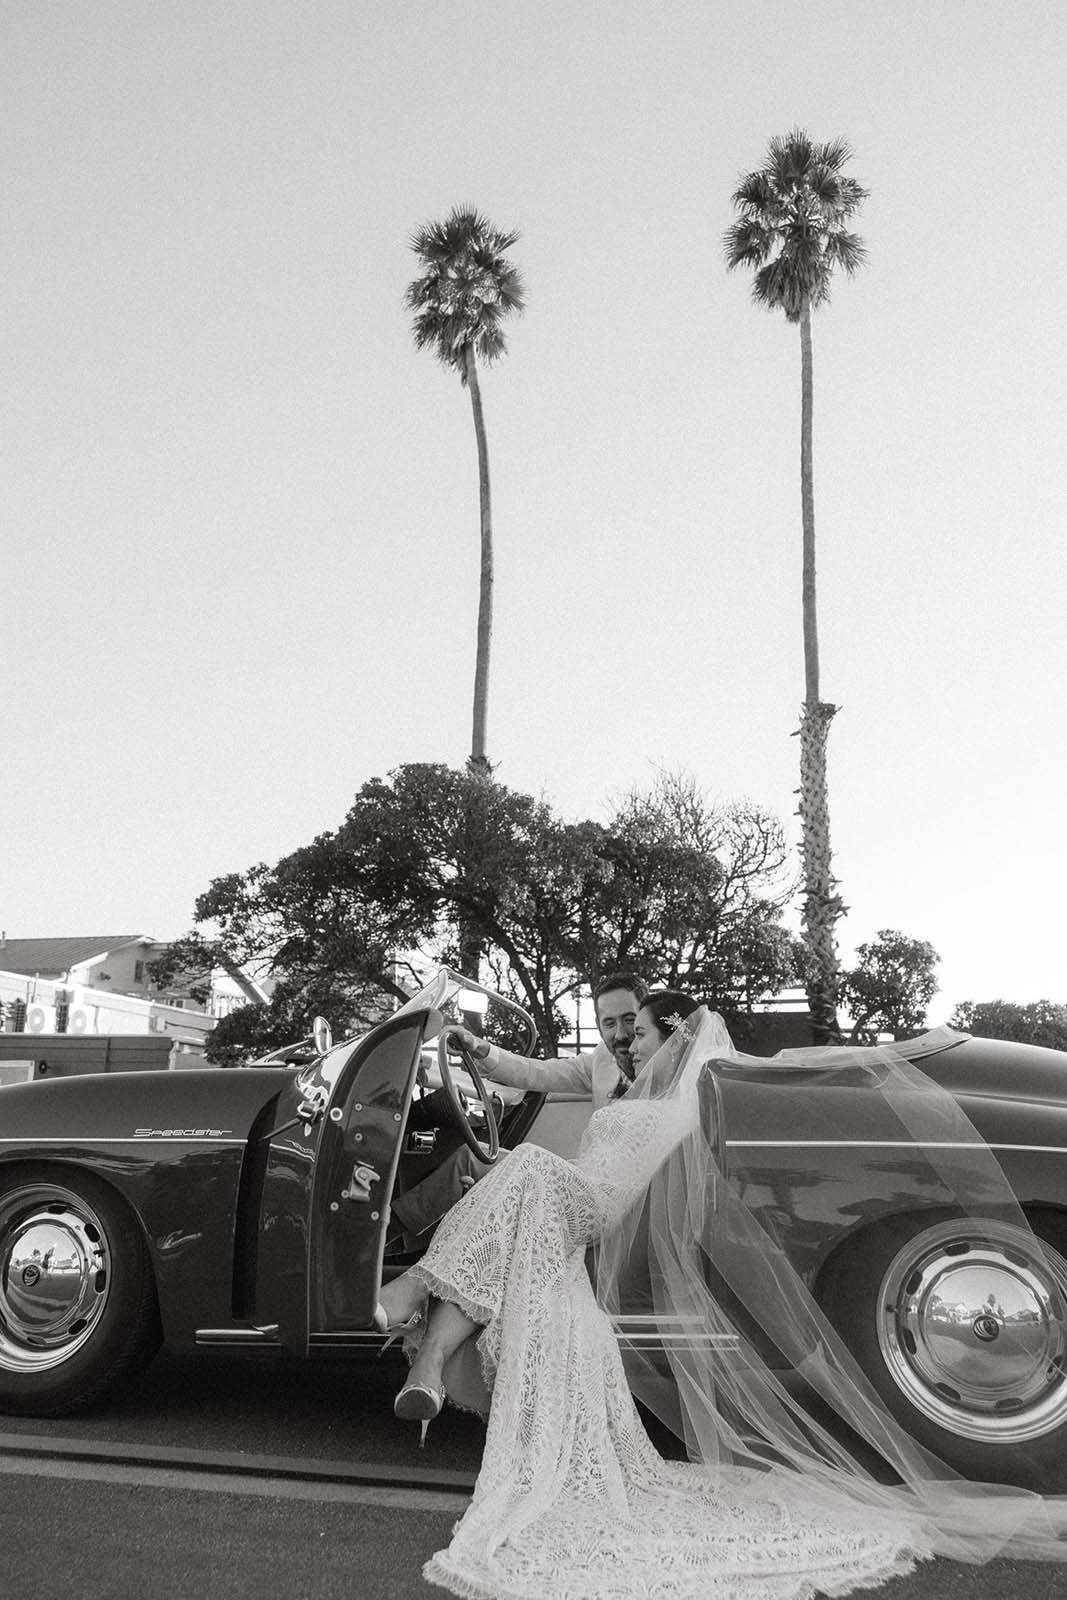 Bride and groom in vintage car